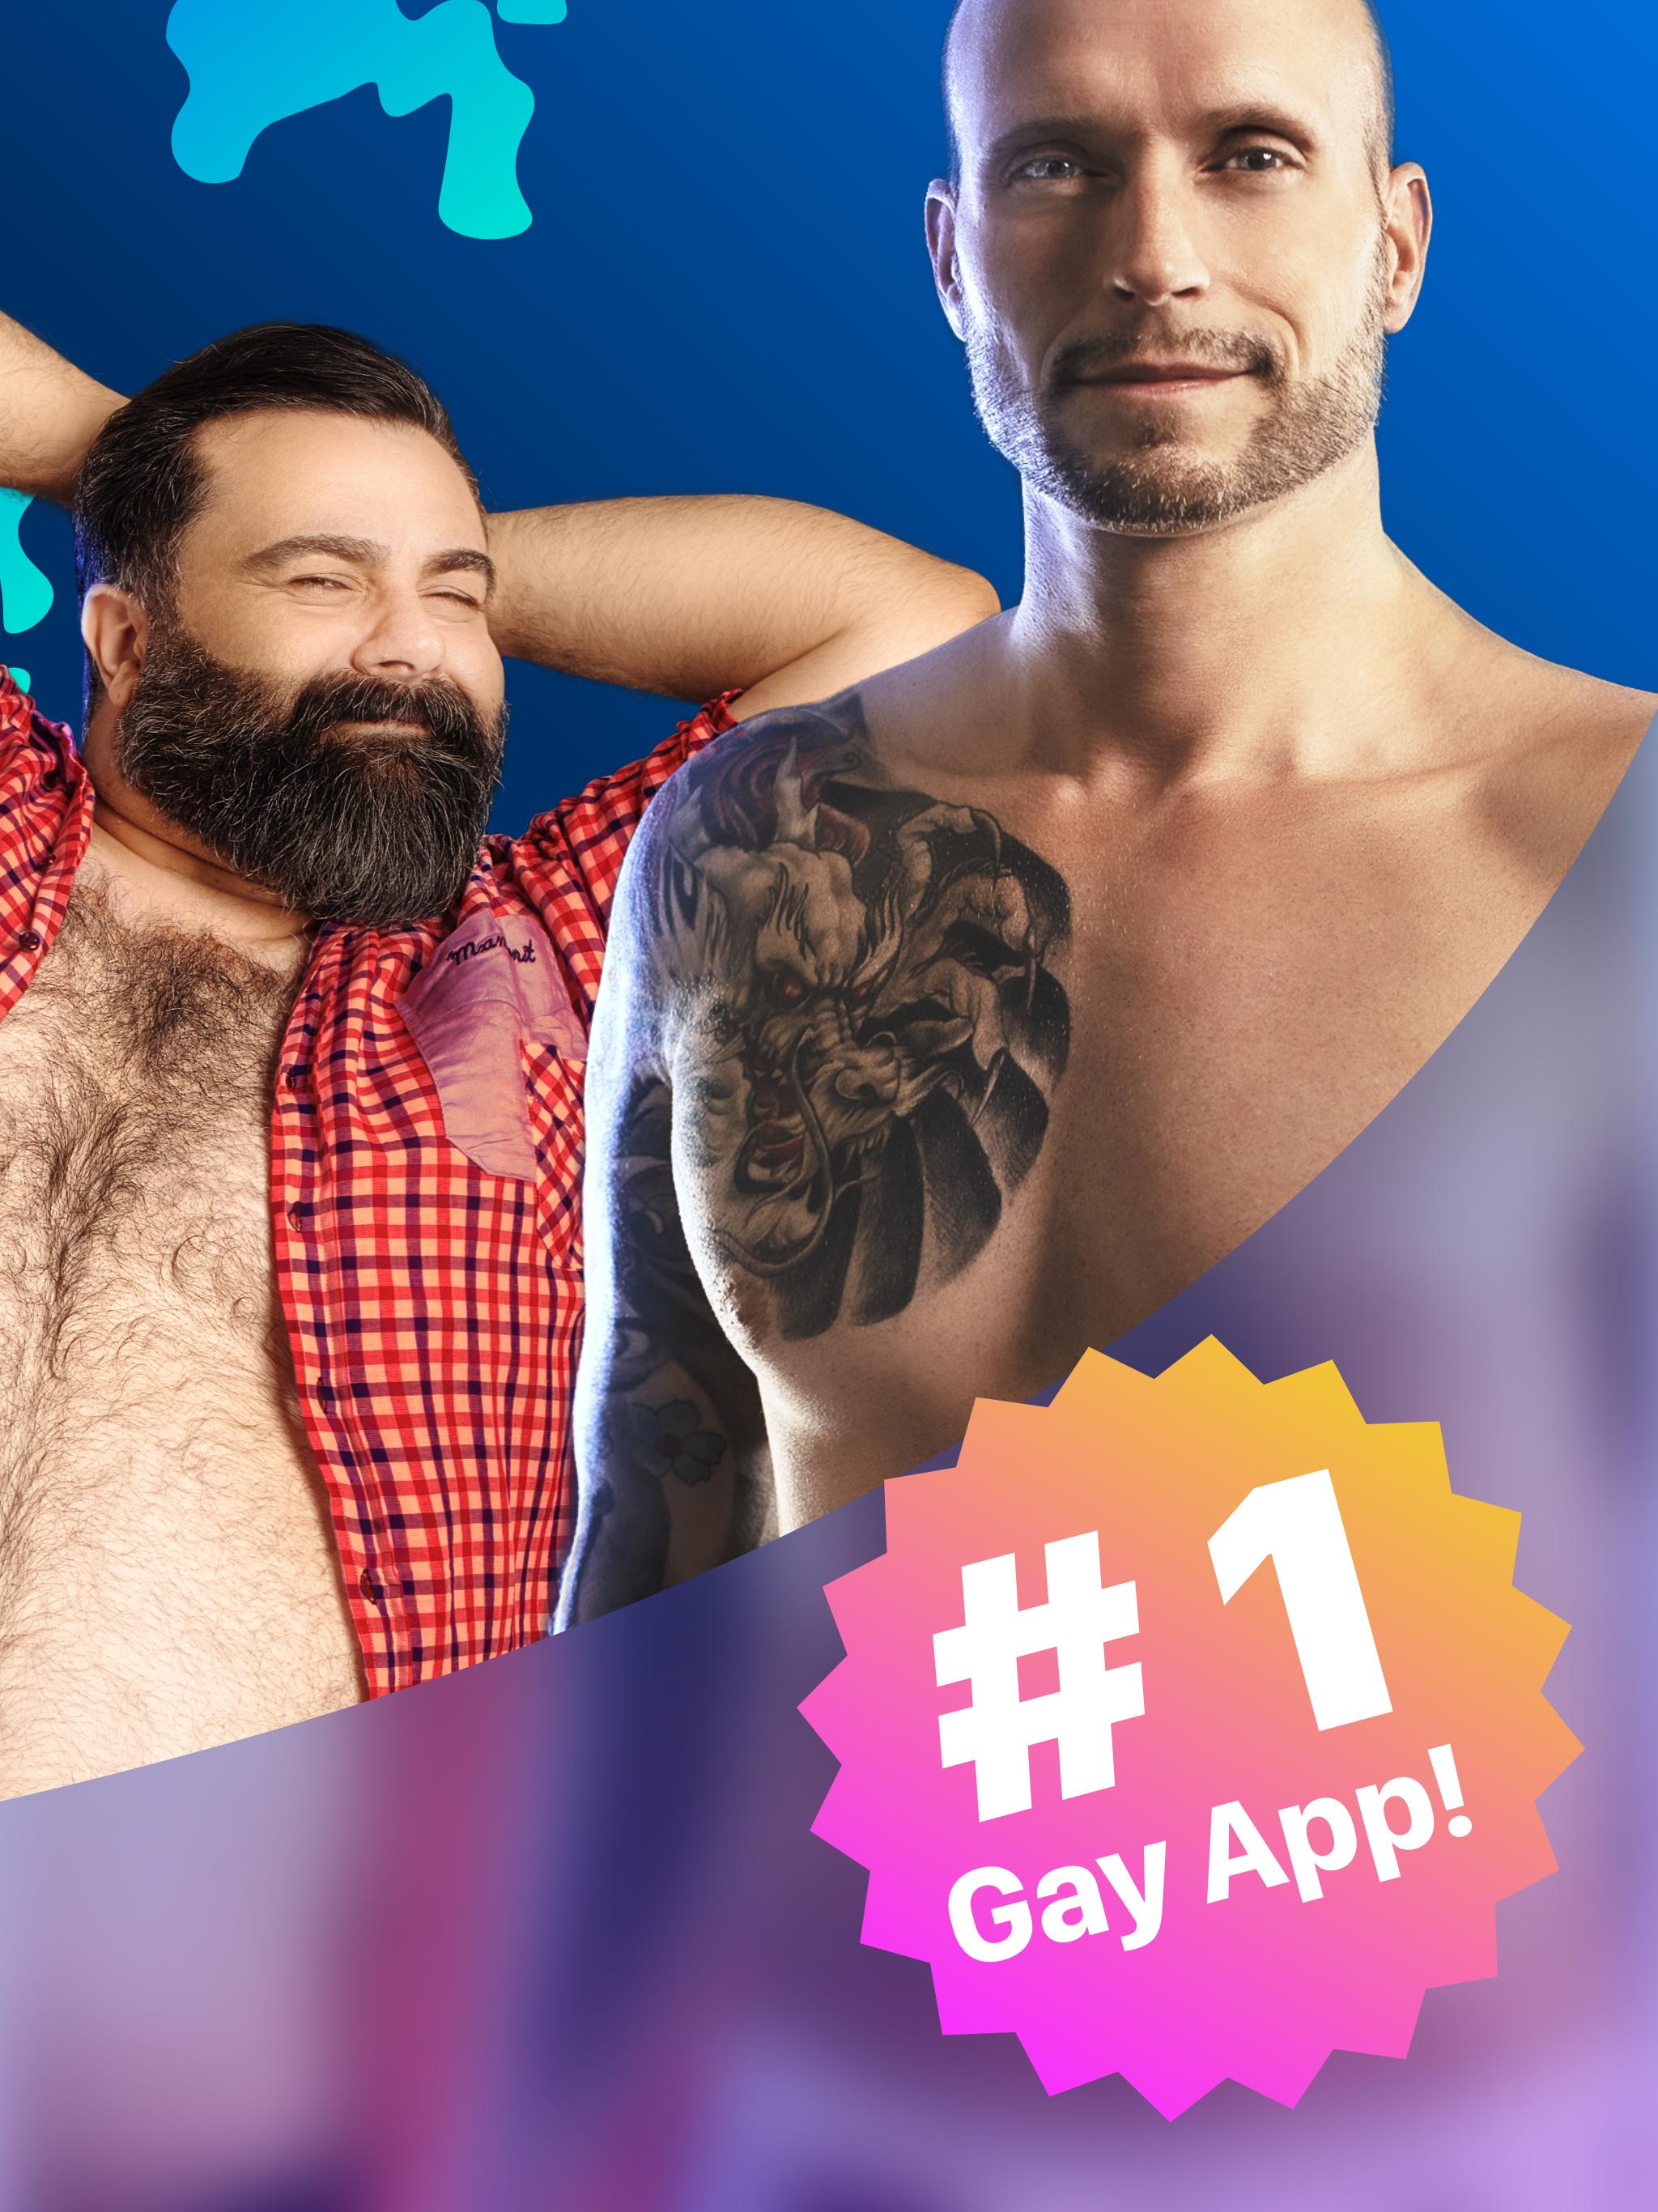 Royal de gay images.tinydeal.com